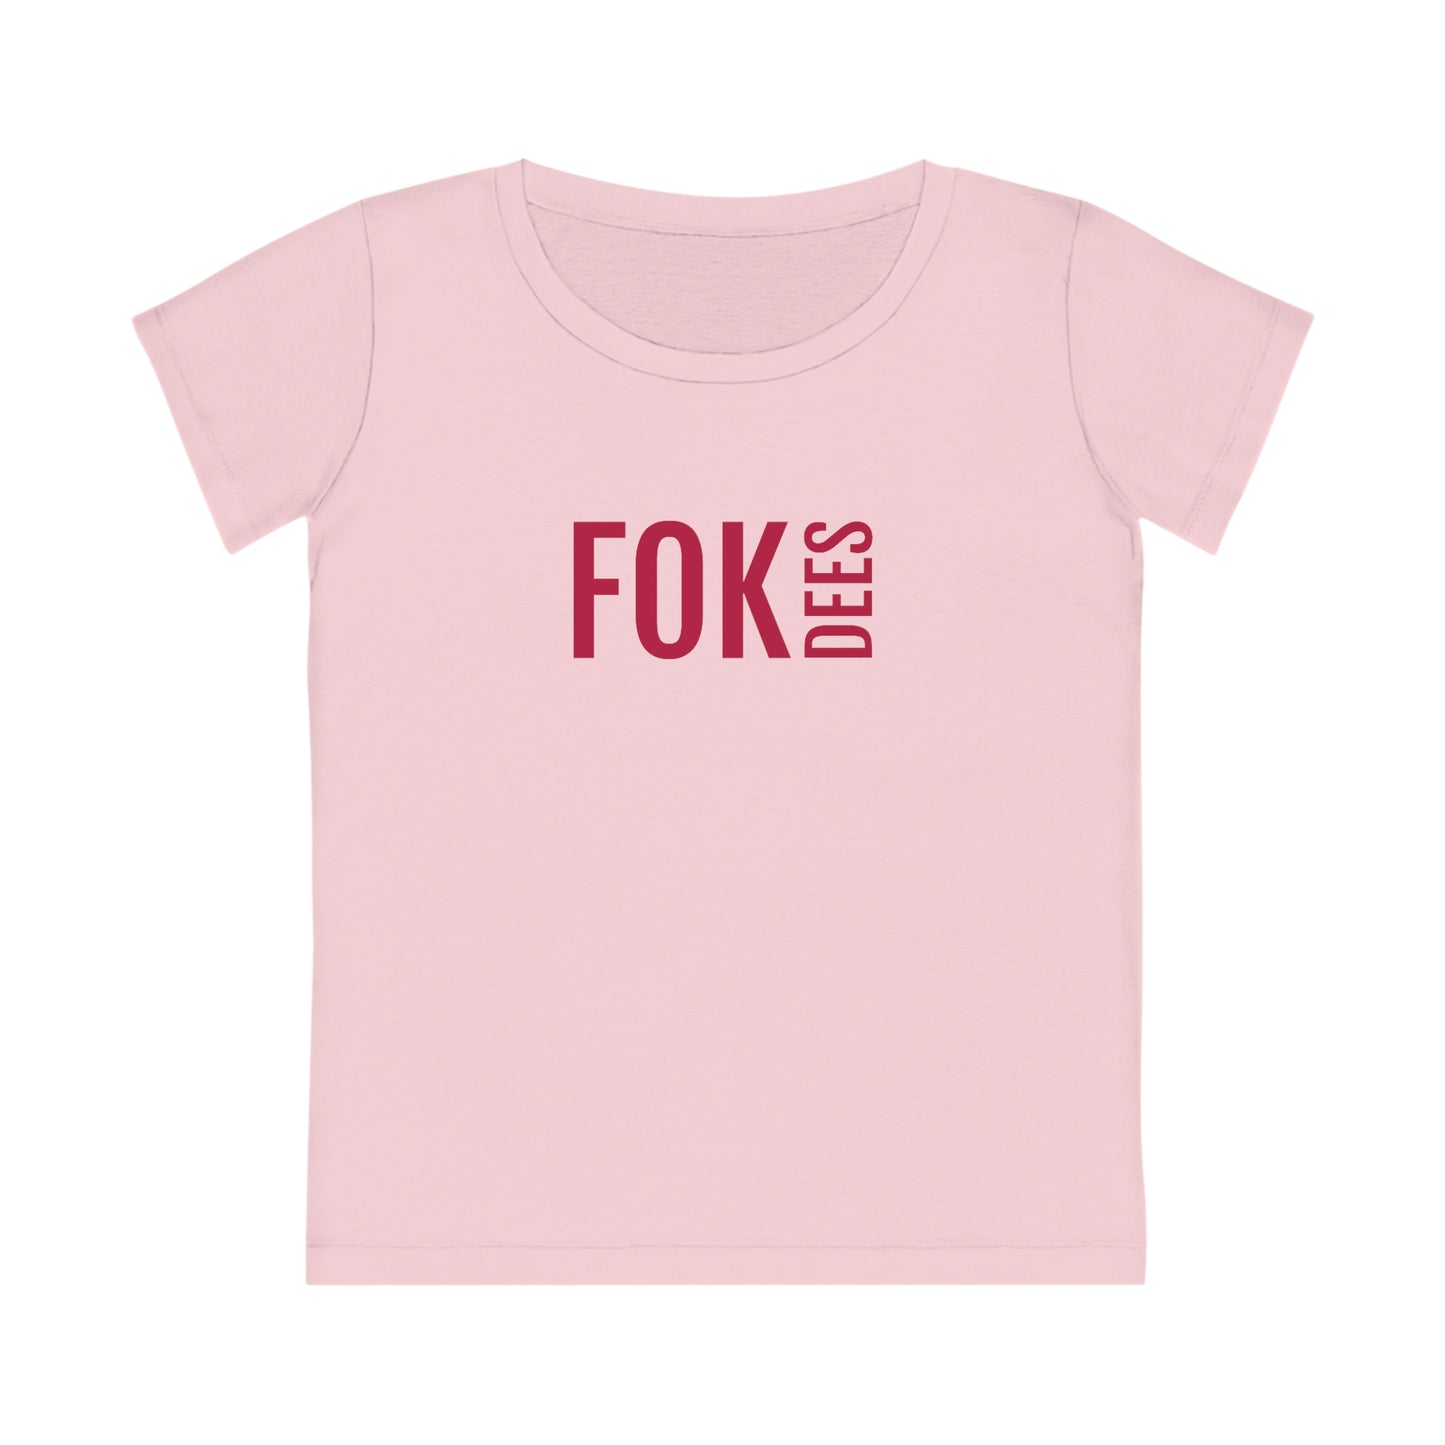 Fok dees | Toffe t-shirts voor dames uit Antwerpenn - Roze